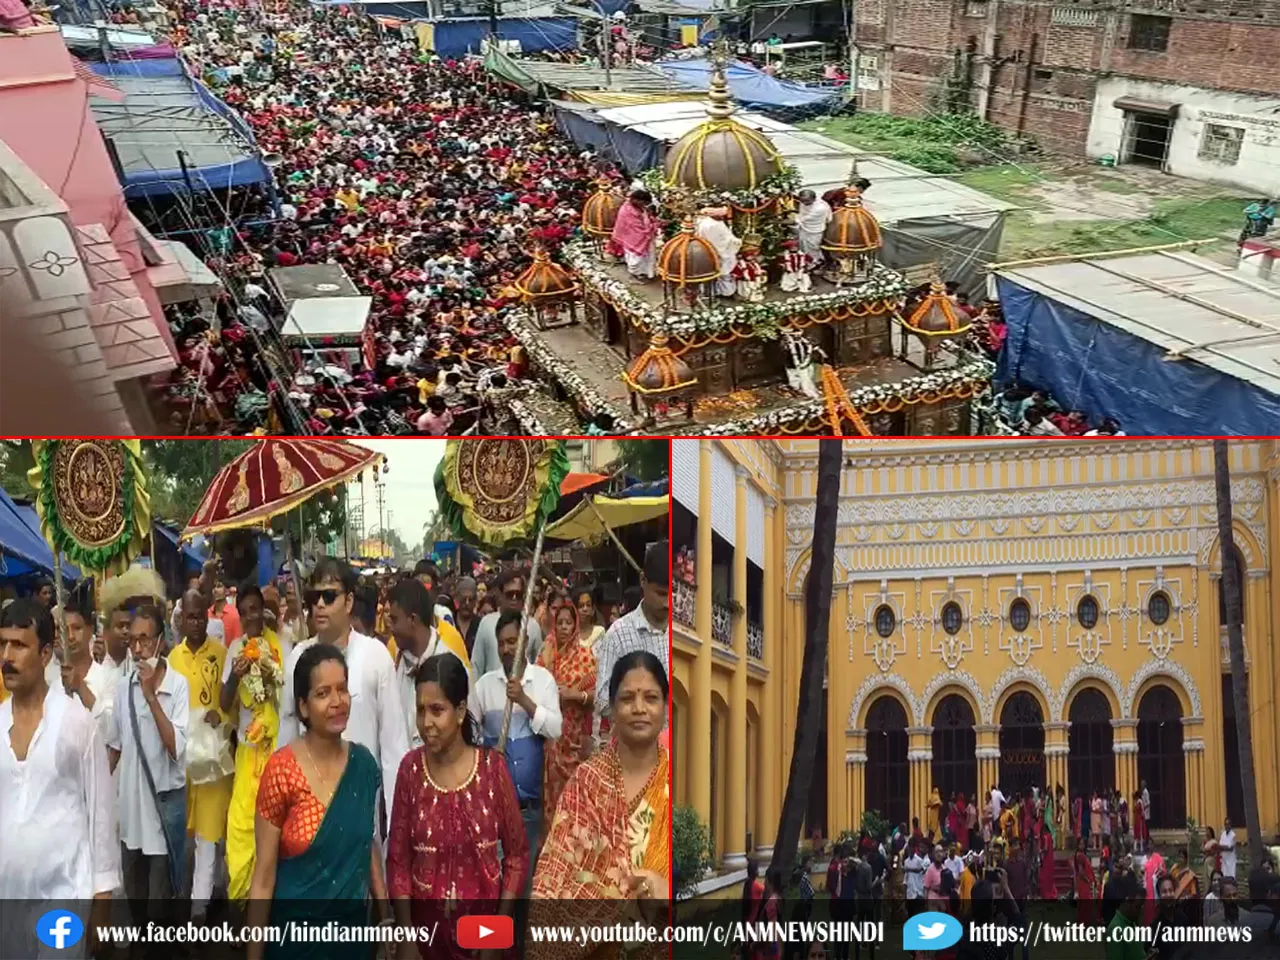 रानीगंज राजबाड़ी की रथयात्रा, हजारों श्रद्धालुओं का जमावड़ा